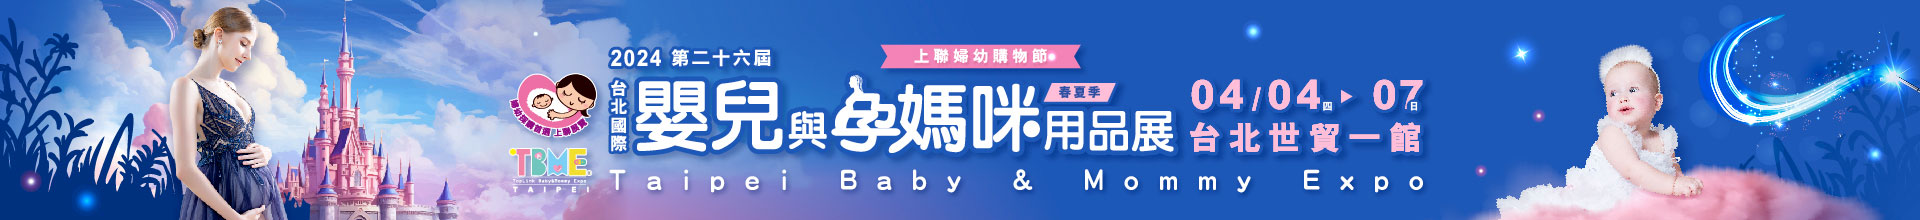 第26屆台北國際嬰兒與孕媽咪用品展(春夏季)